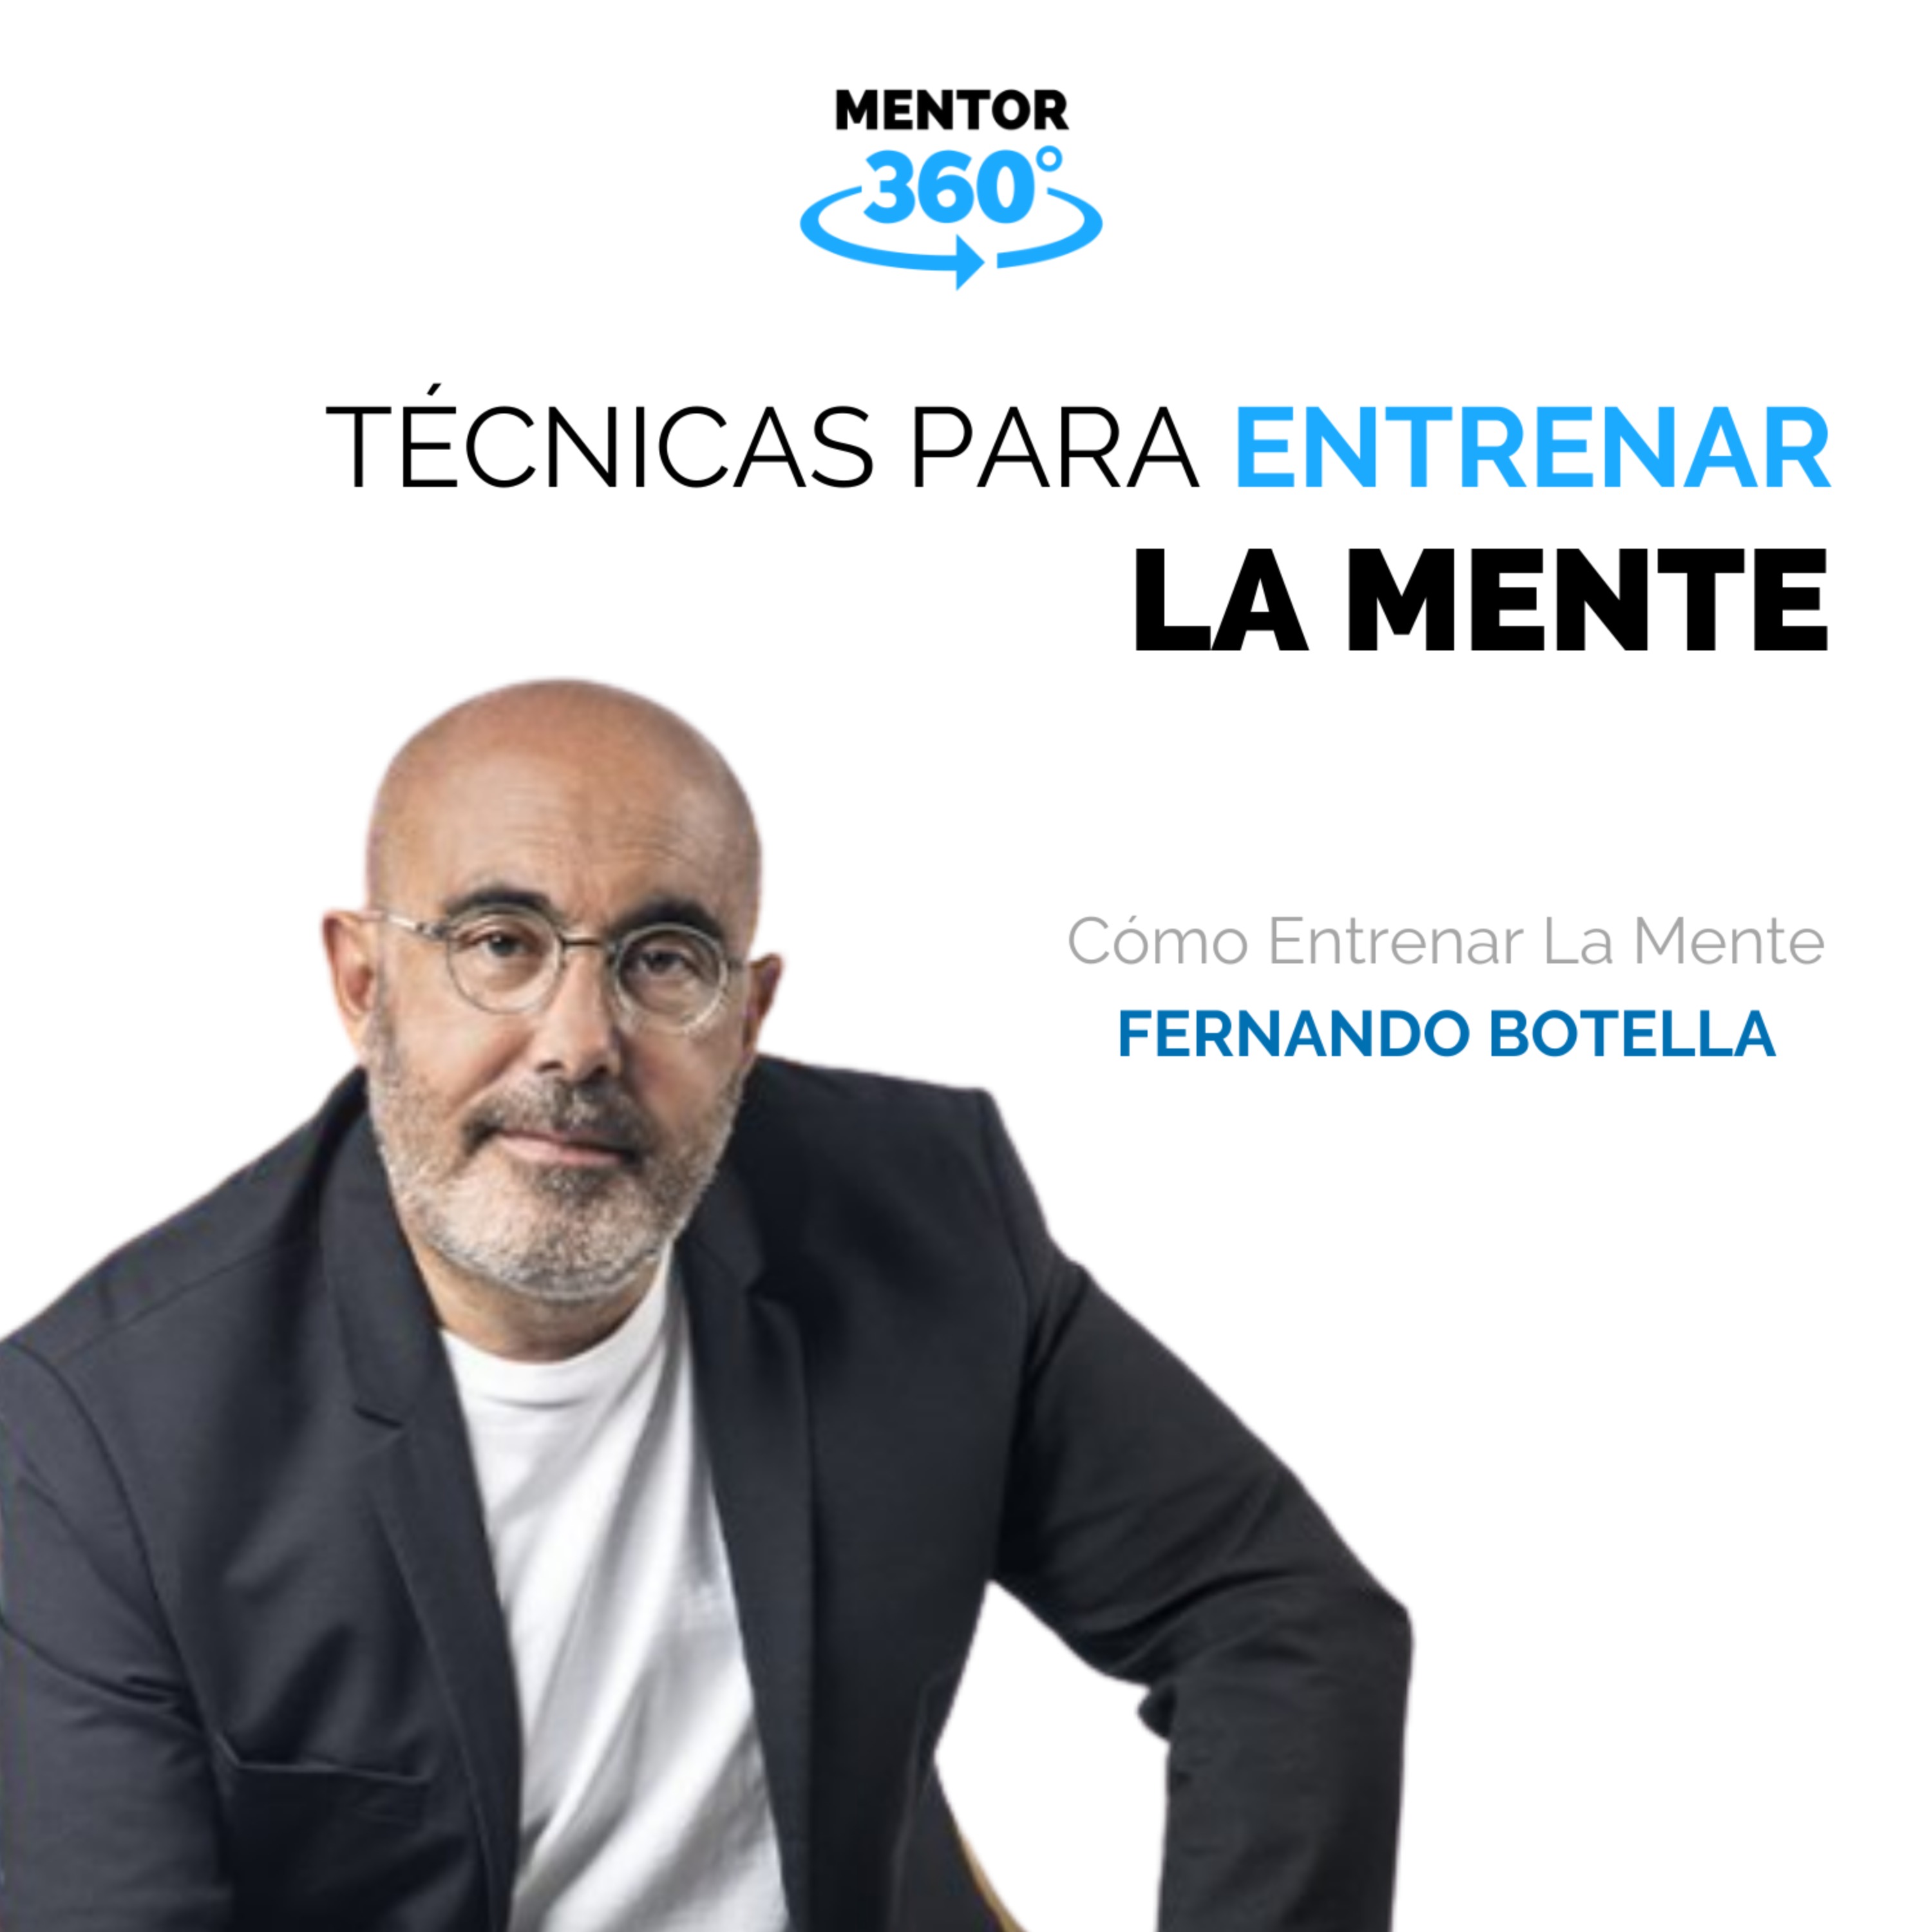 Técnicas Para Entrenar La Mente - Cómo Entrenar La Mente - Fernando Botella - MENTOR360